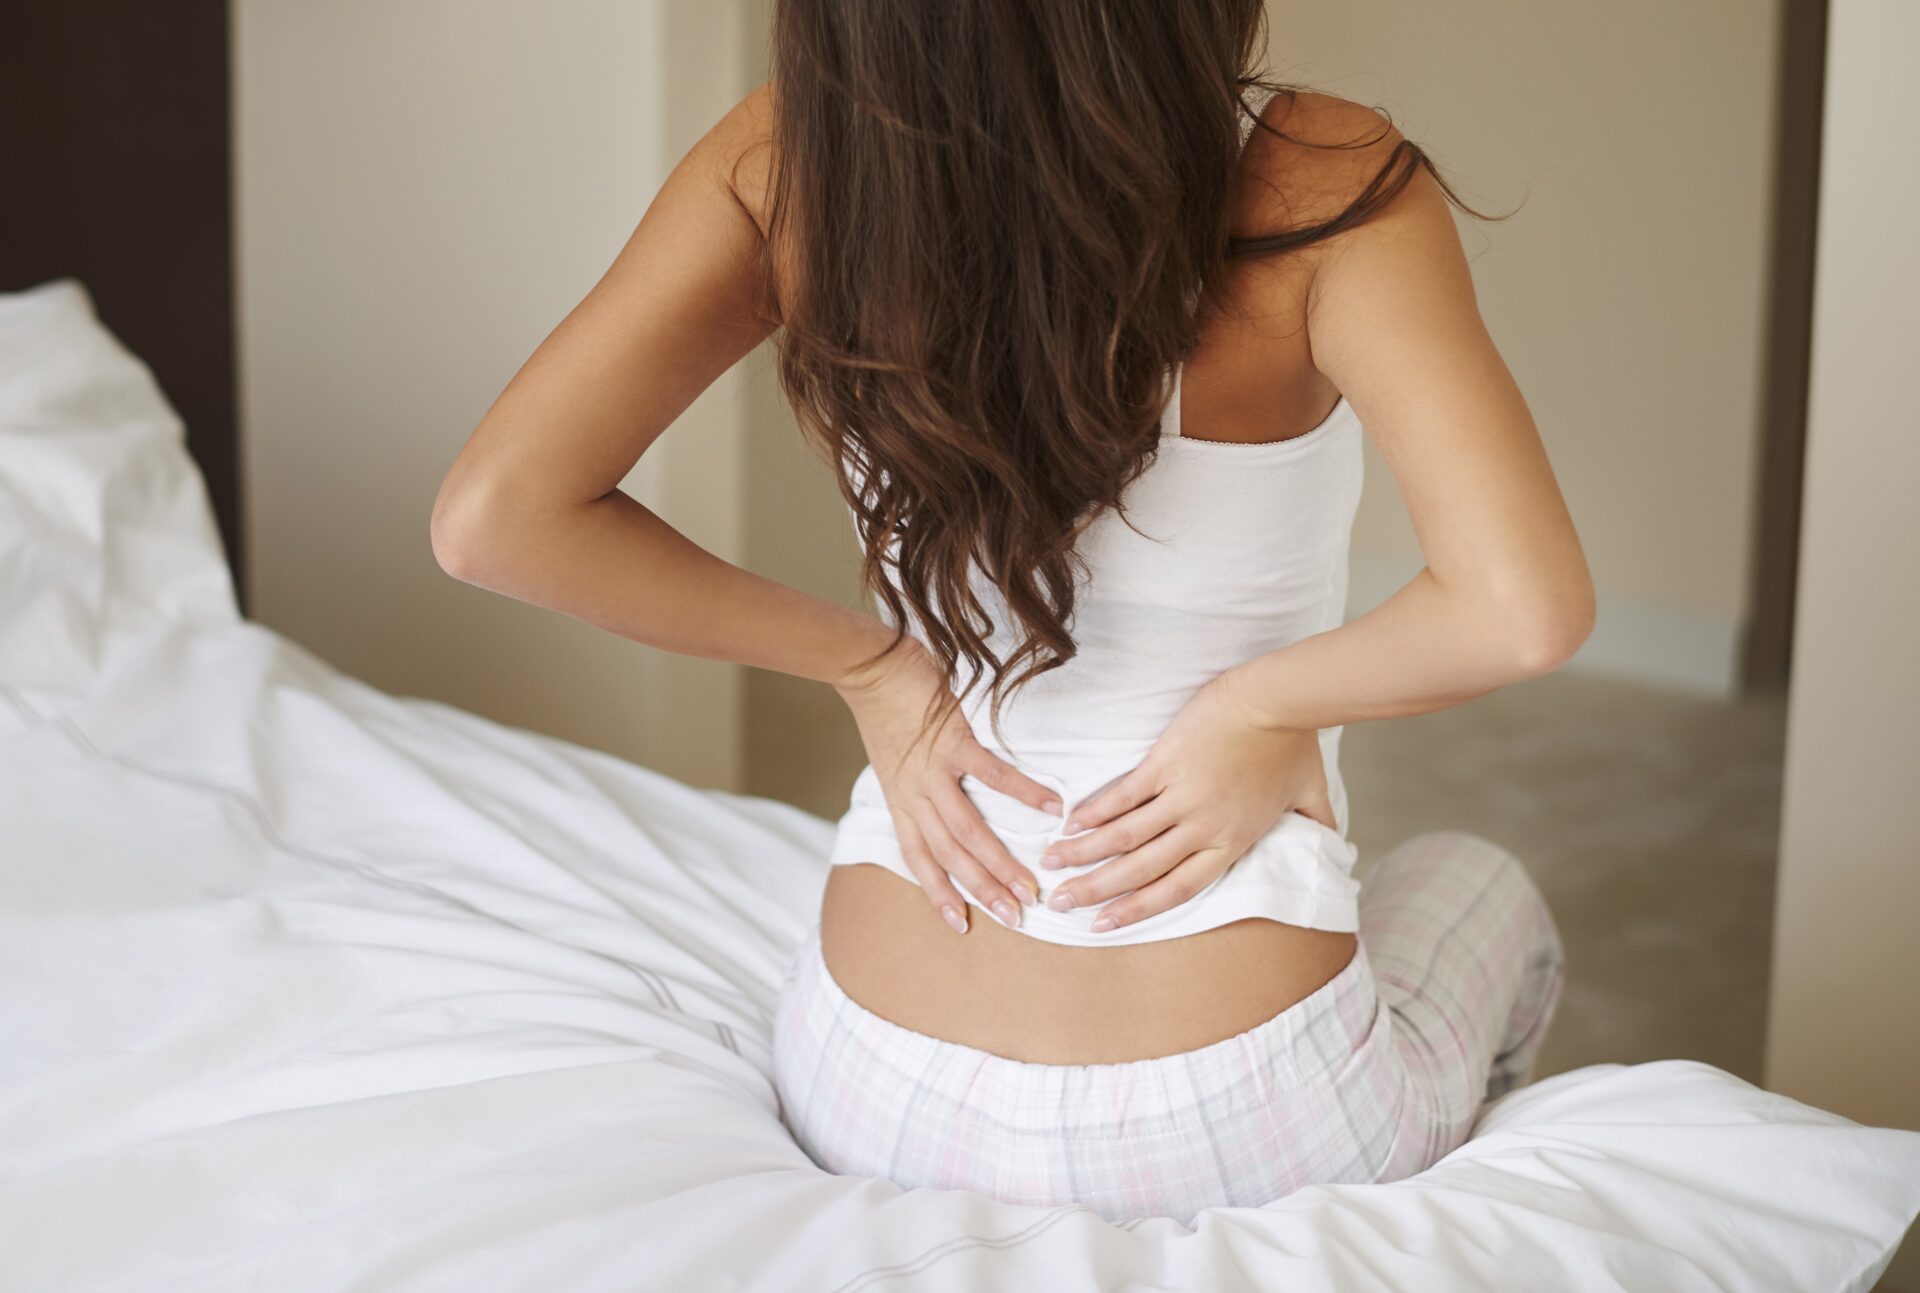 Mujer joven con dolor en la parte baja de la espalda que puede ser lumbalgia